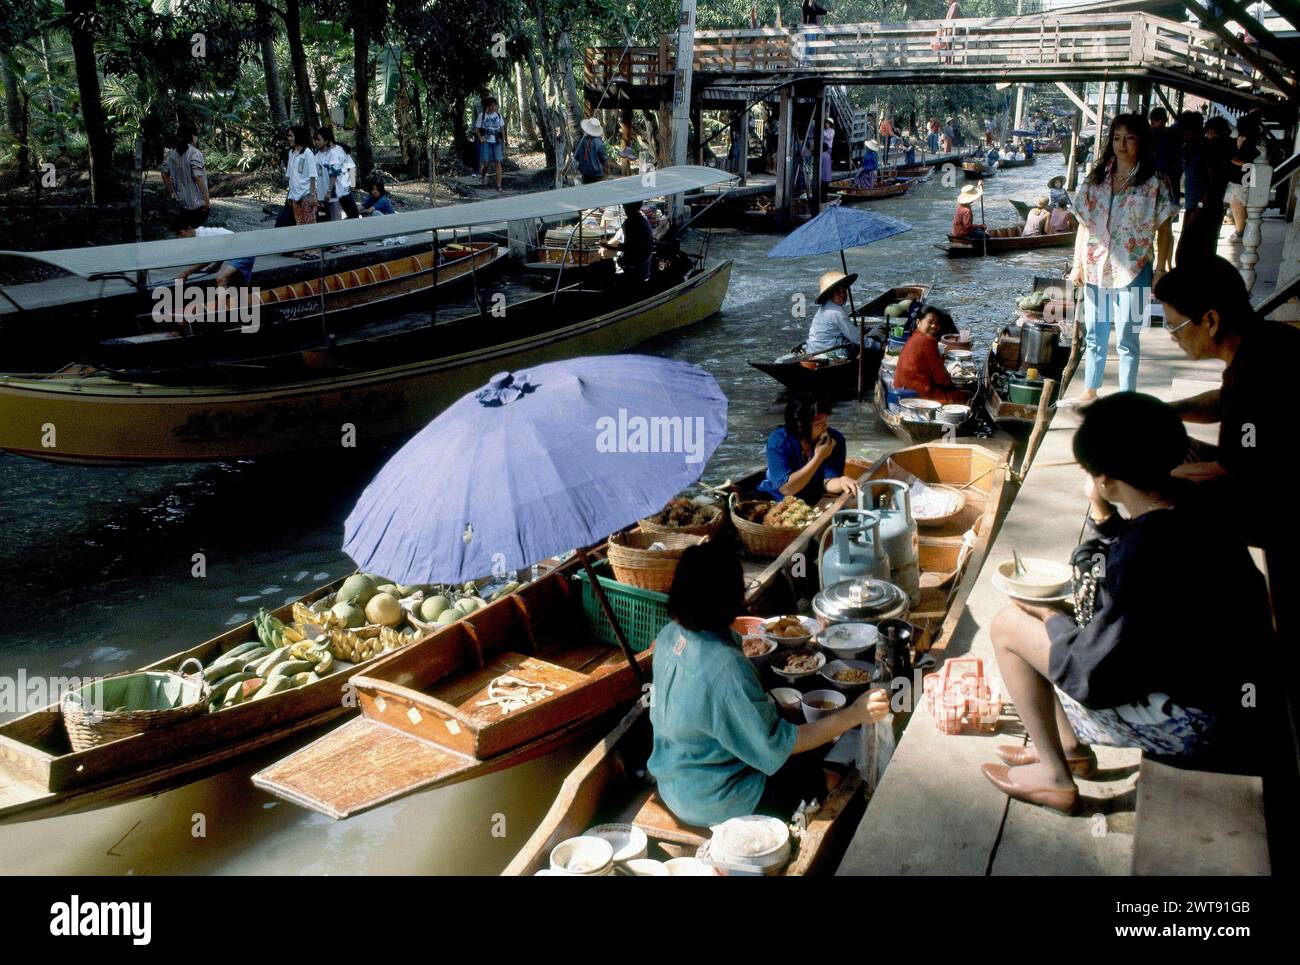 VENDEDORA EN BARCA VENDIENDO COMIDA YA COCINADA - FOTO AÑOS 90. Location: MERCADO FLOTANTE. BANGKOK. TAILANDIA. Stock Photo